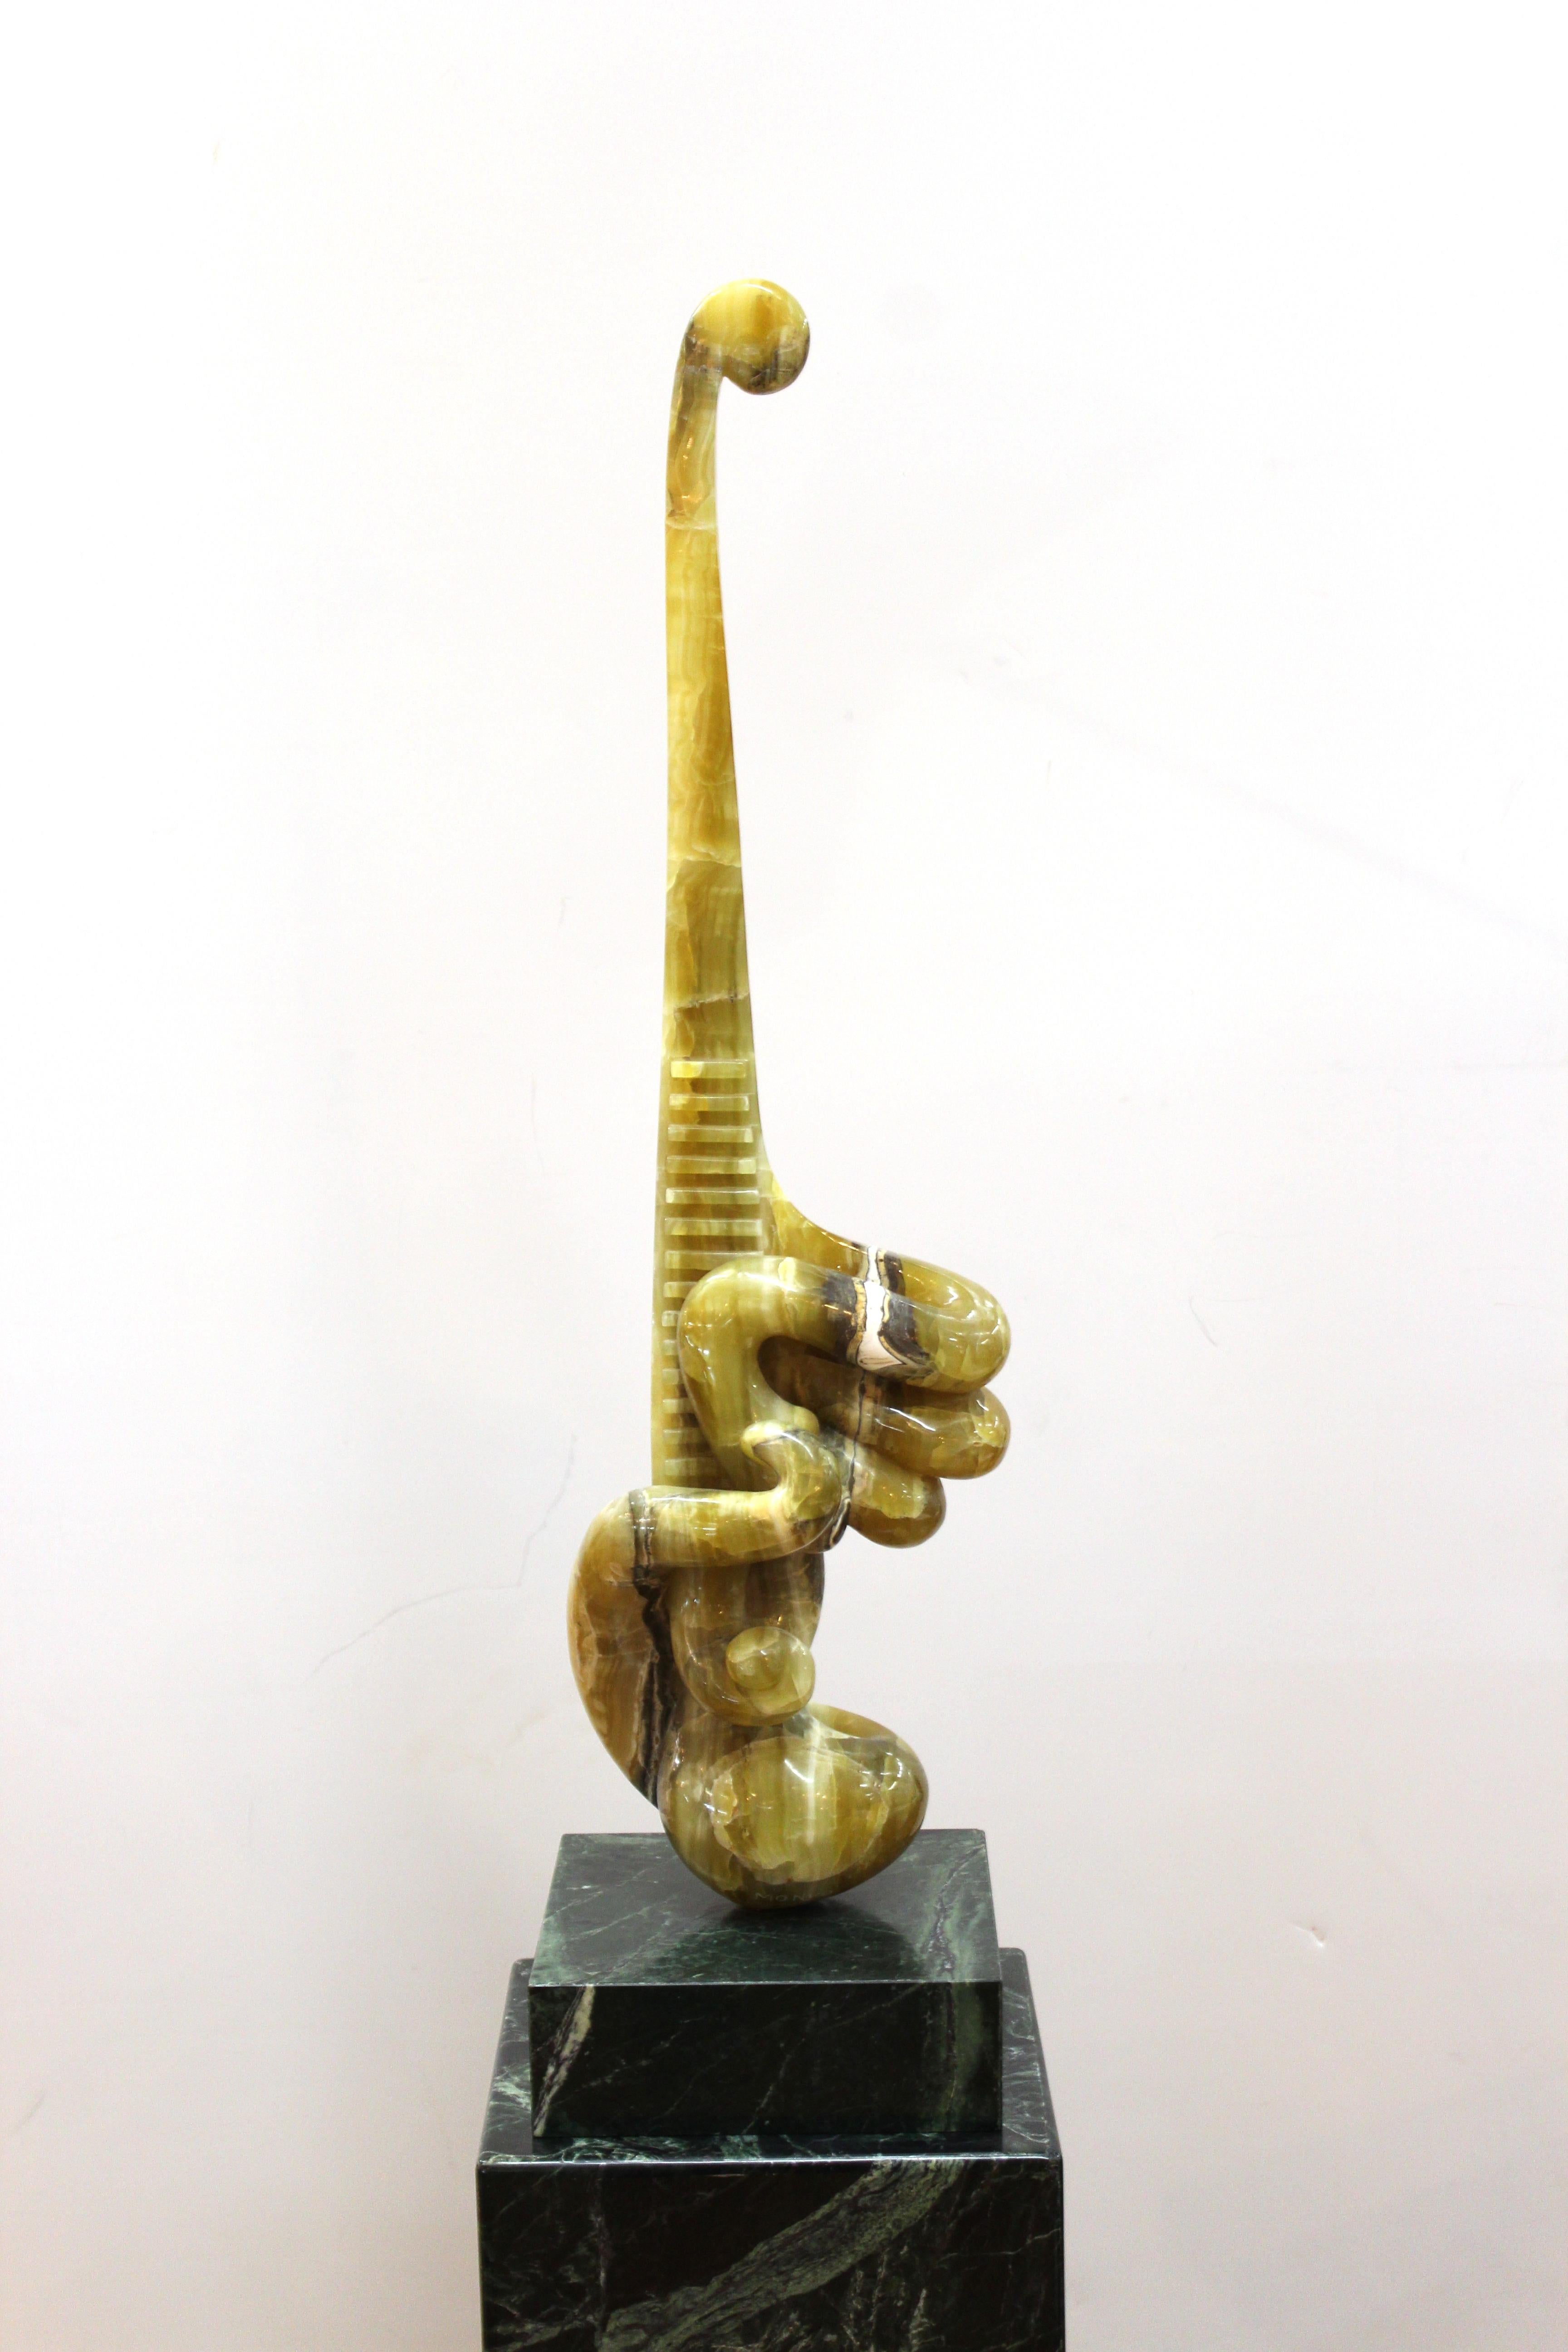 Moderne abstrakte Skulptur aus geschnitztem Marmor des rumänischen Künstlers Prinz Monyo Mihailescu-Nasturel. Das Stück hat gewundene biomorphe Formen und Schwaden und steht auf einem quadratischen Sockel, der auf einem hohen Marmorsockel montiert